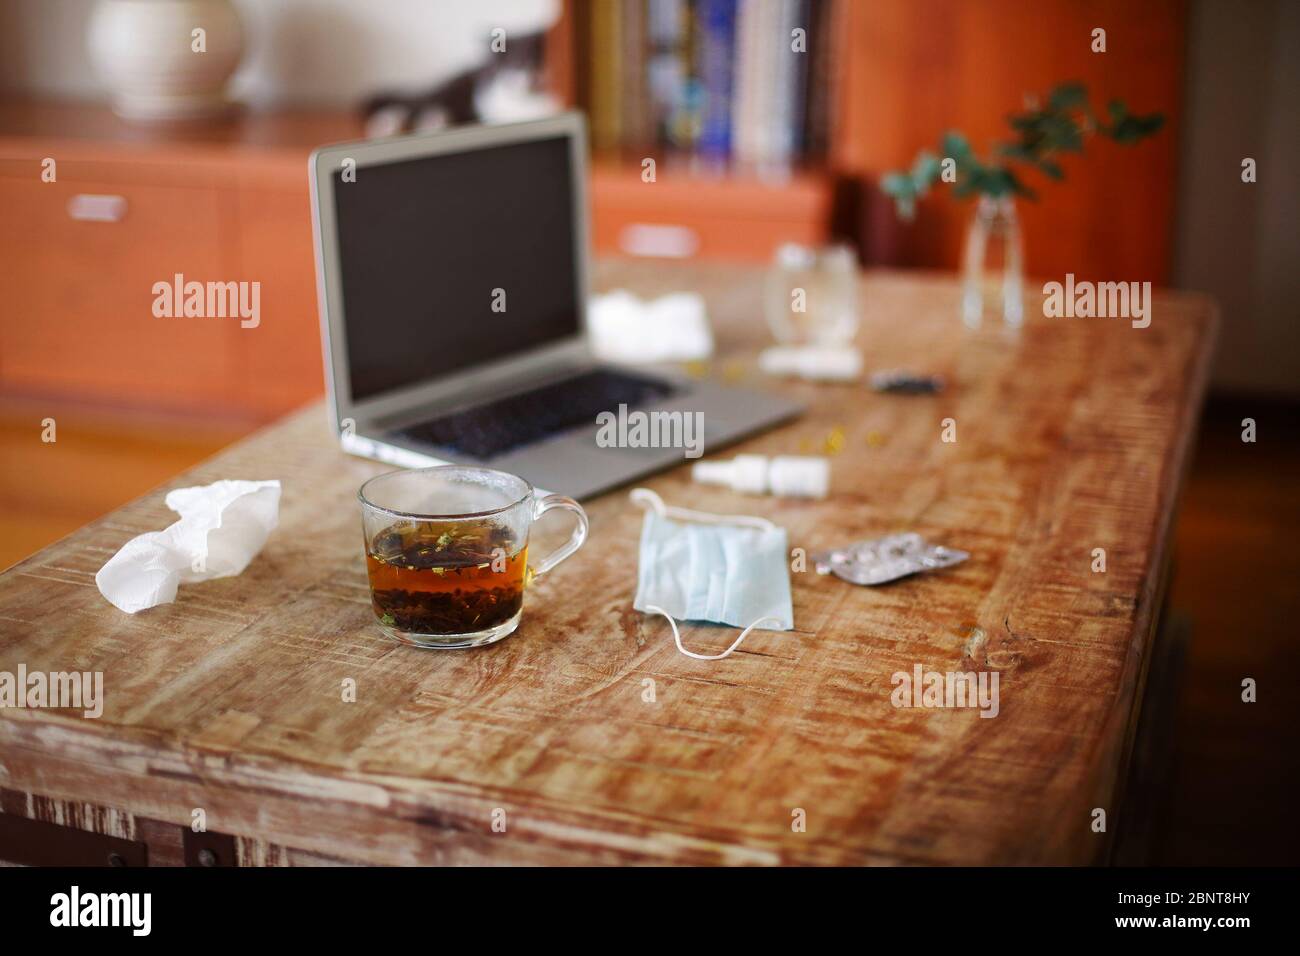 Desde arriba varios medicamentos y máscara médica colocado en la mesa cerca de las ramas de la planta en jarrón y portátil con pantalla en blanco Foto de stock